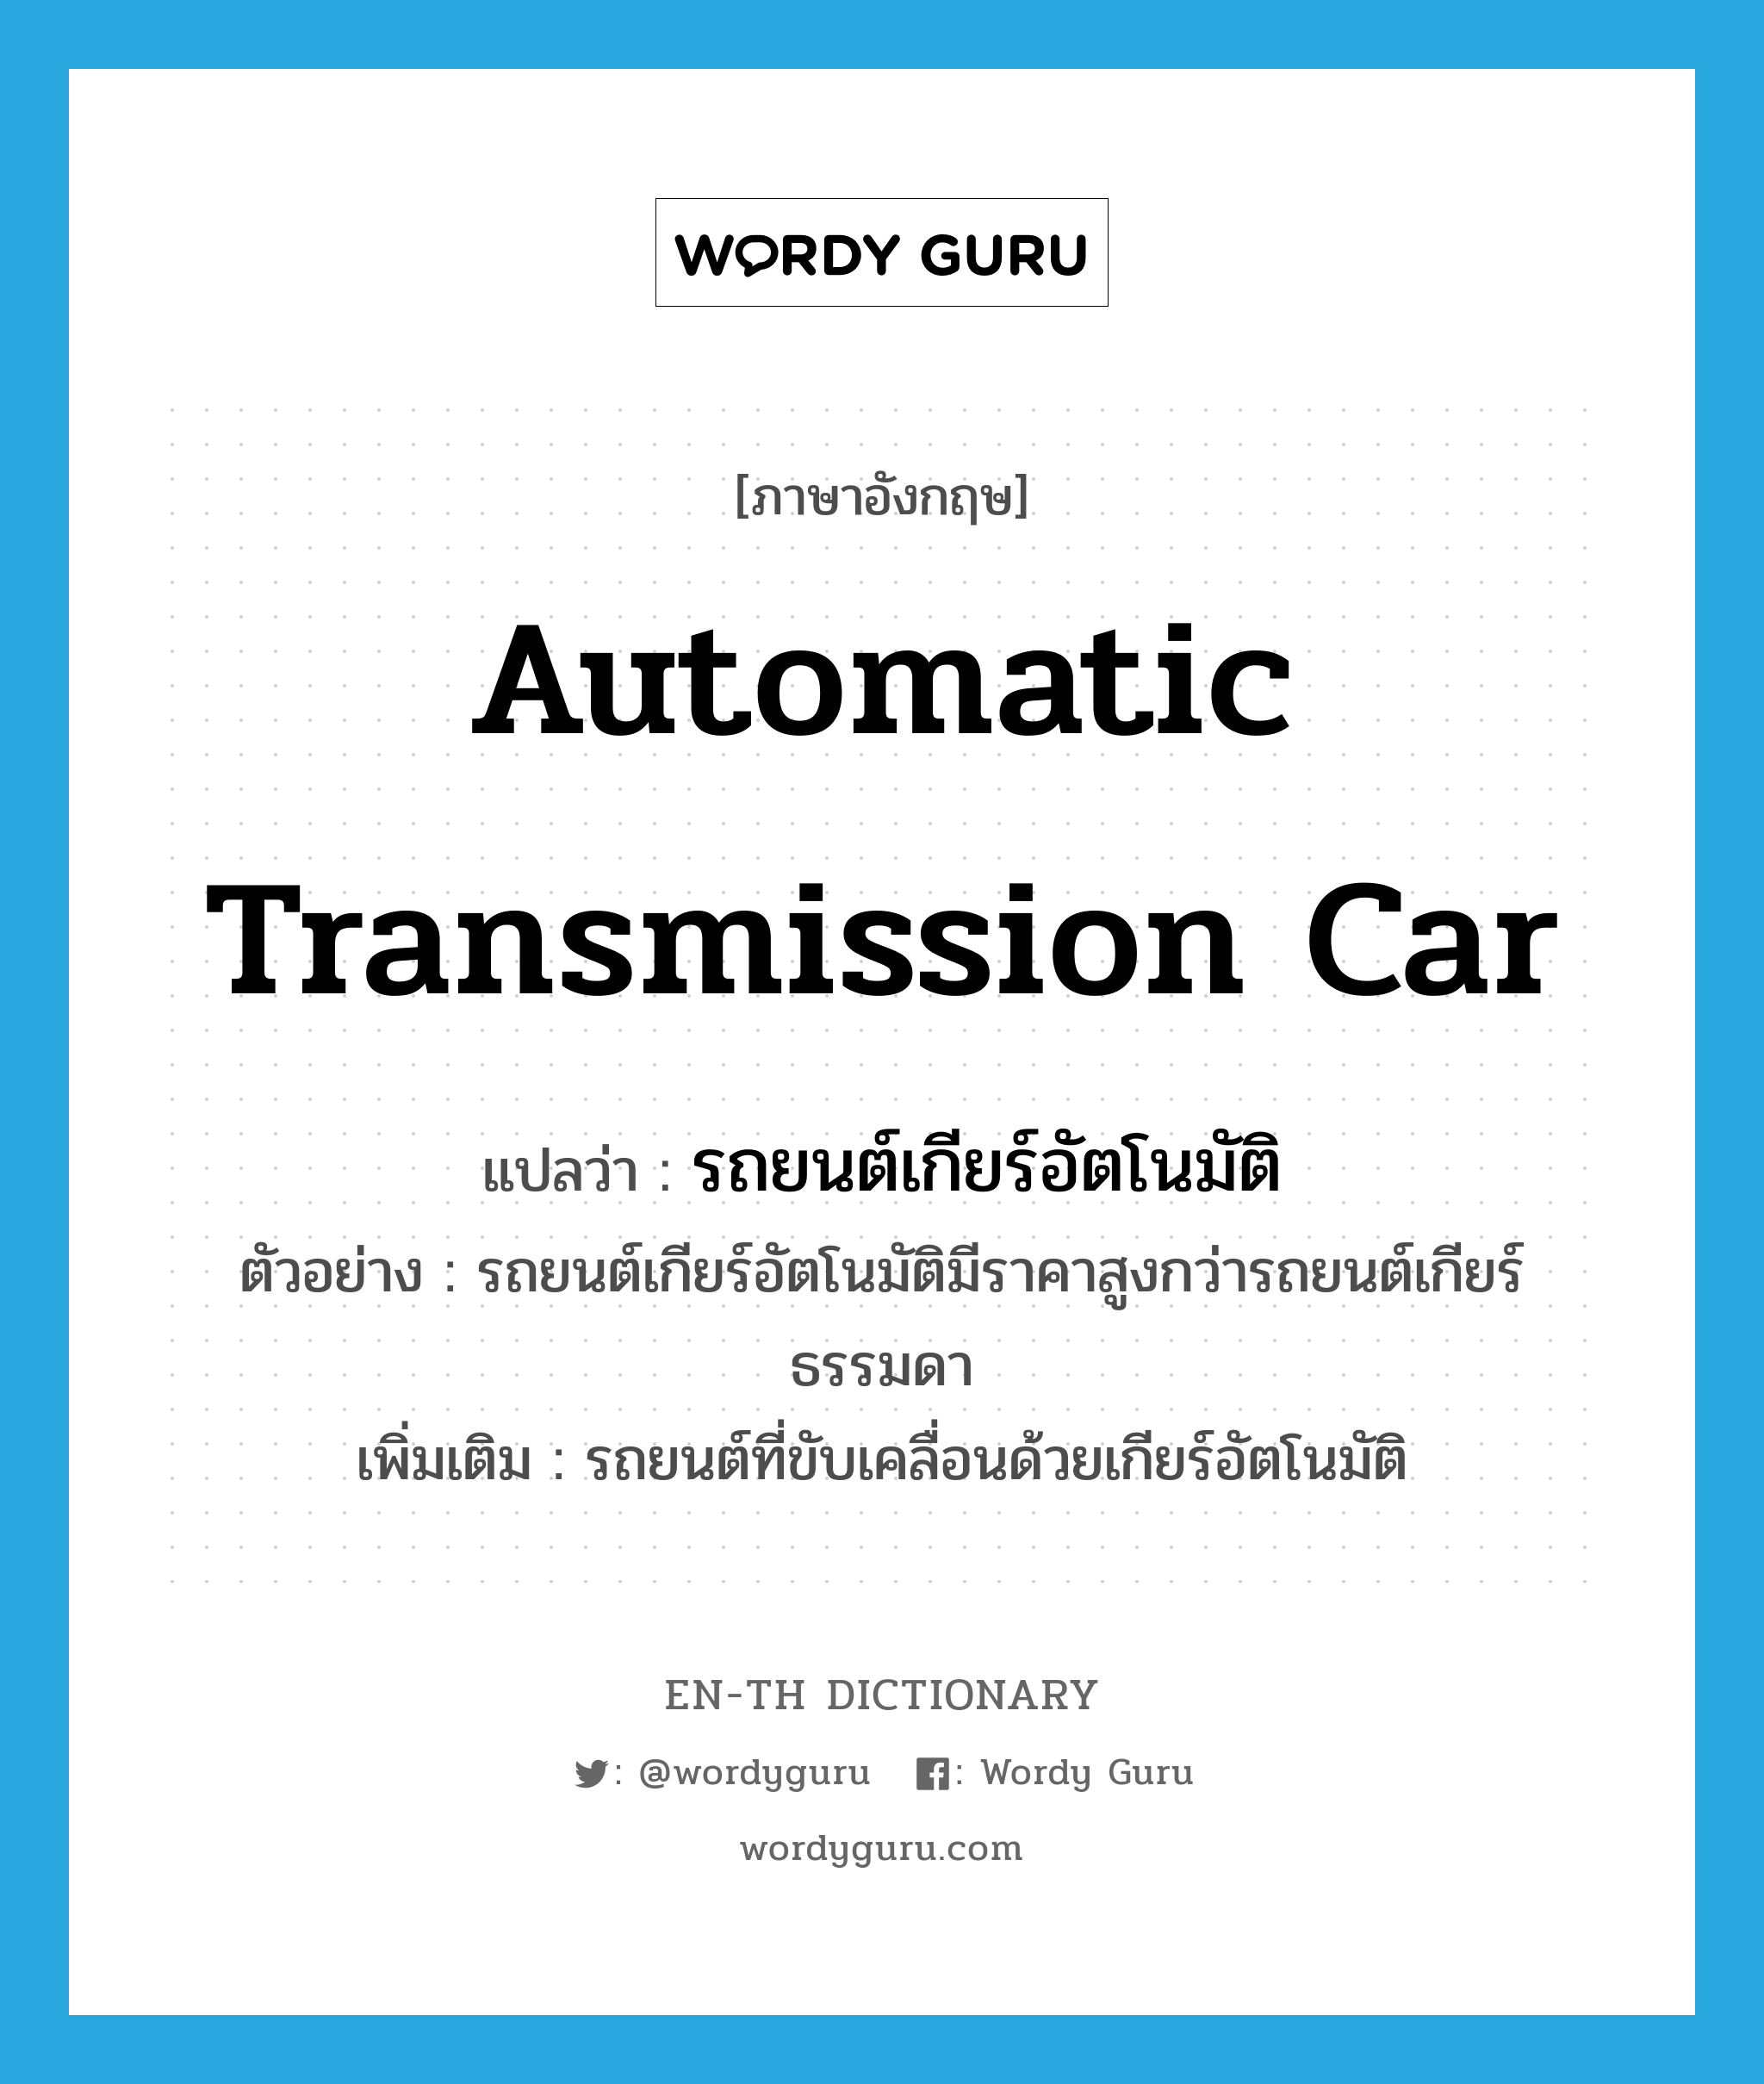 รถยนต์เกียร์อัตโนมัติ ภาษาอังกฤษ?, คำศัพท์ภาษาอังกฤษ รถยนต์เกียร์อัตโนมัติ แปลว่า automatic transmission car ประเภท N ตัวอย่าง รถยนต์เกียร์อัตโนมัติมีราคาสูงกว่ารถยนต์เกียร์ธรรมดา เพิ่มเติม รถยนต์ที่ขับเคลื่อนด้วยเกียร์อัตโนมัติ หมวด N